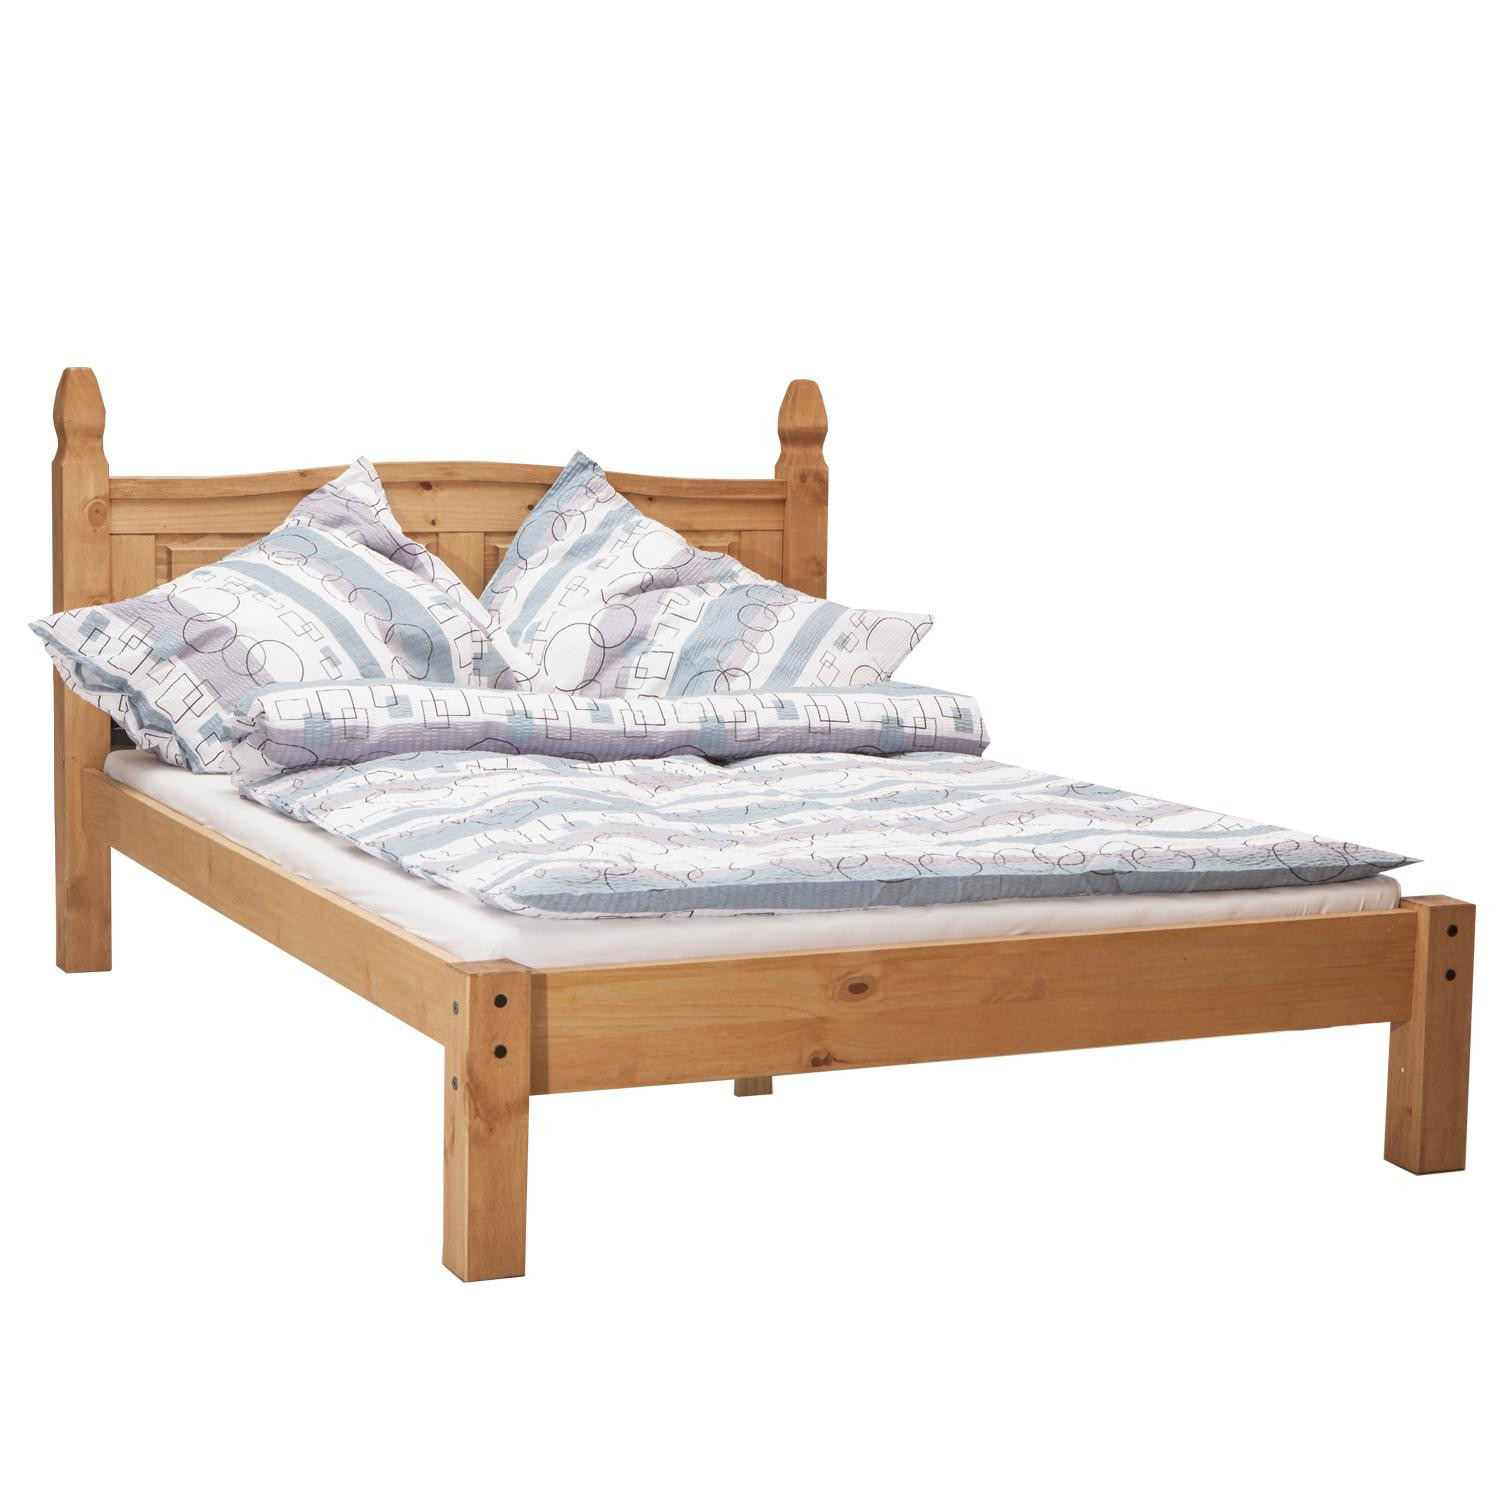 IDEA Двуспальная кровать CORONA воска 140x200